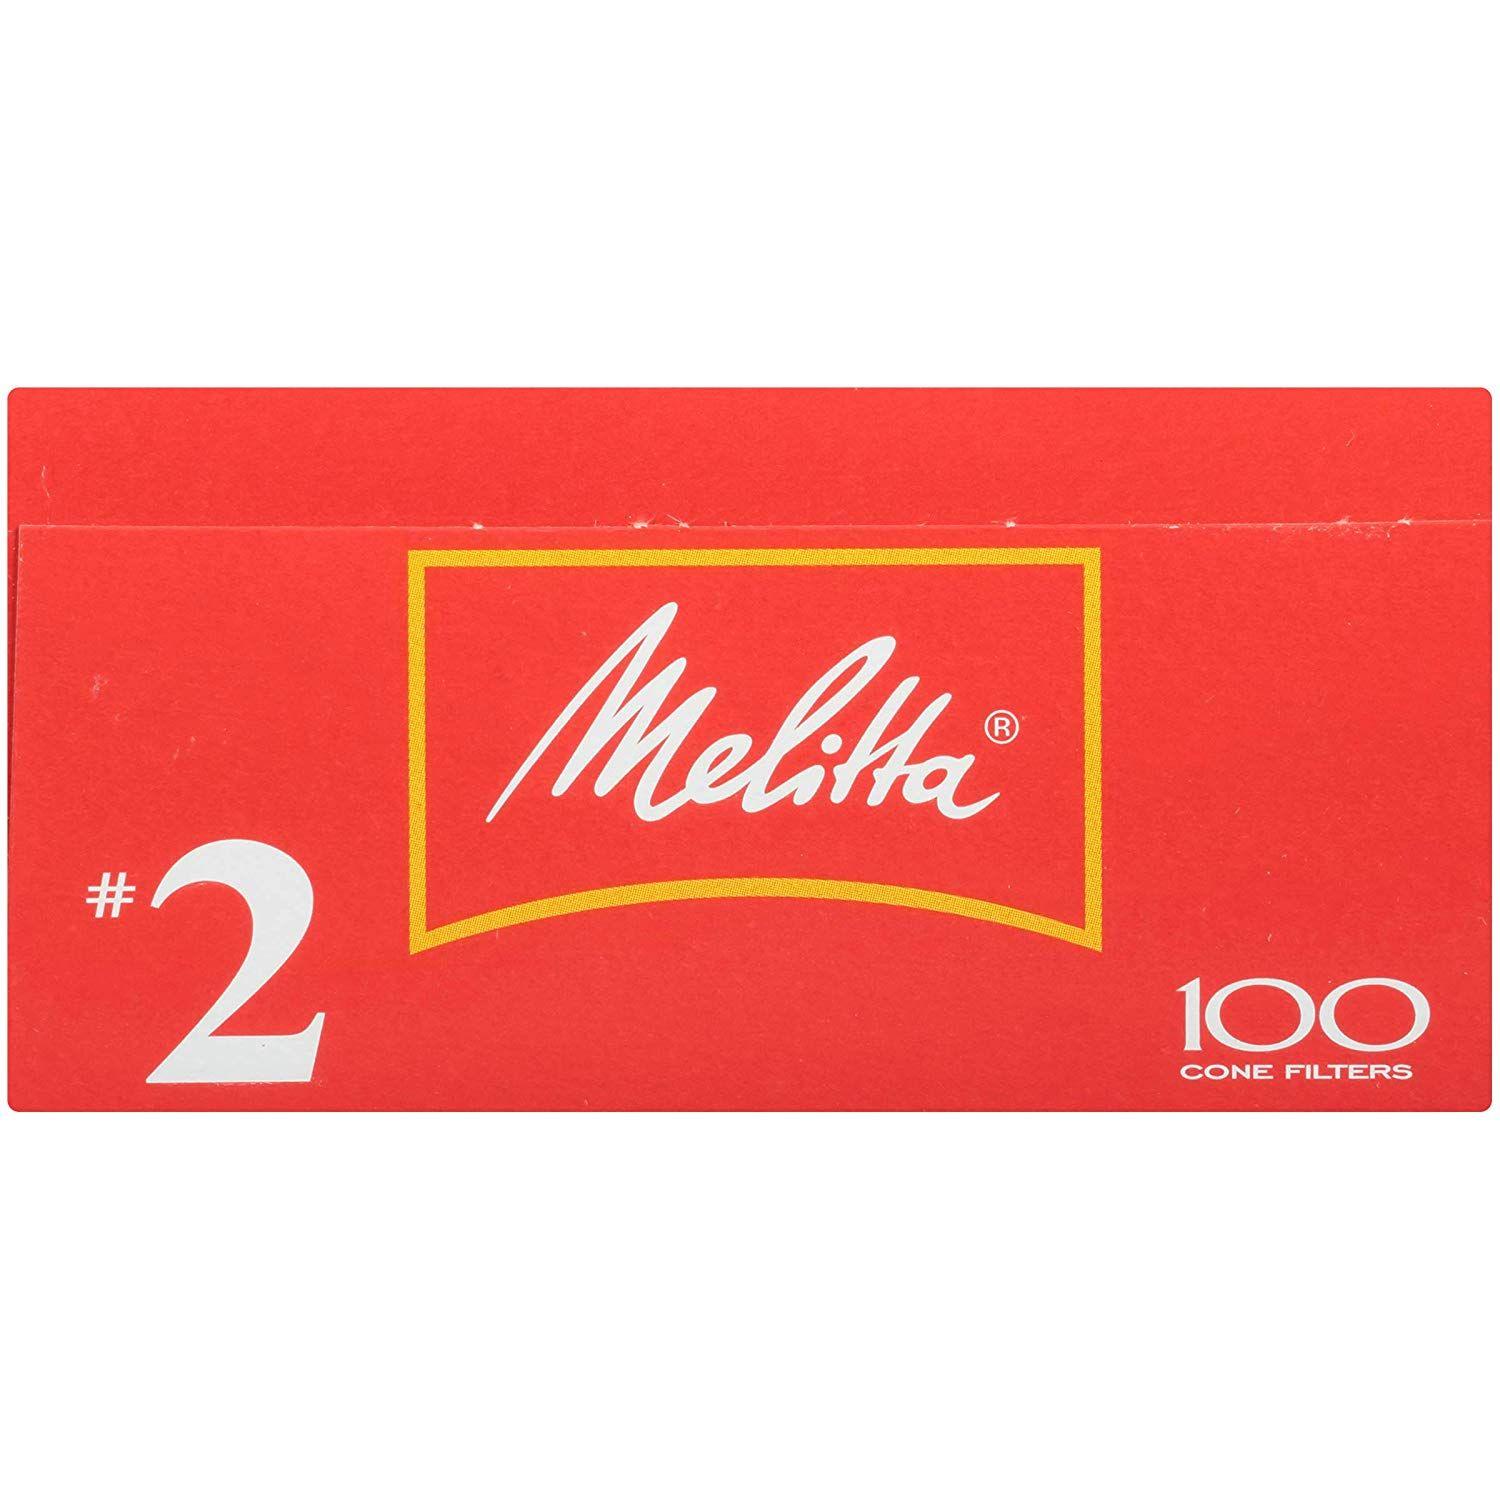 Melitta Logo - Melitta Cone Coffee Filters, White, No. 2, 100 count